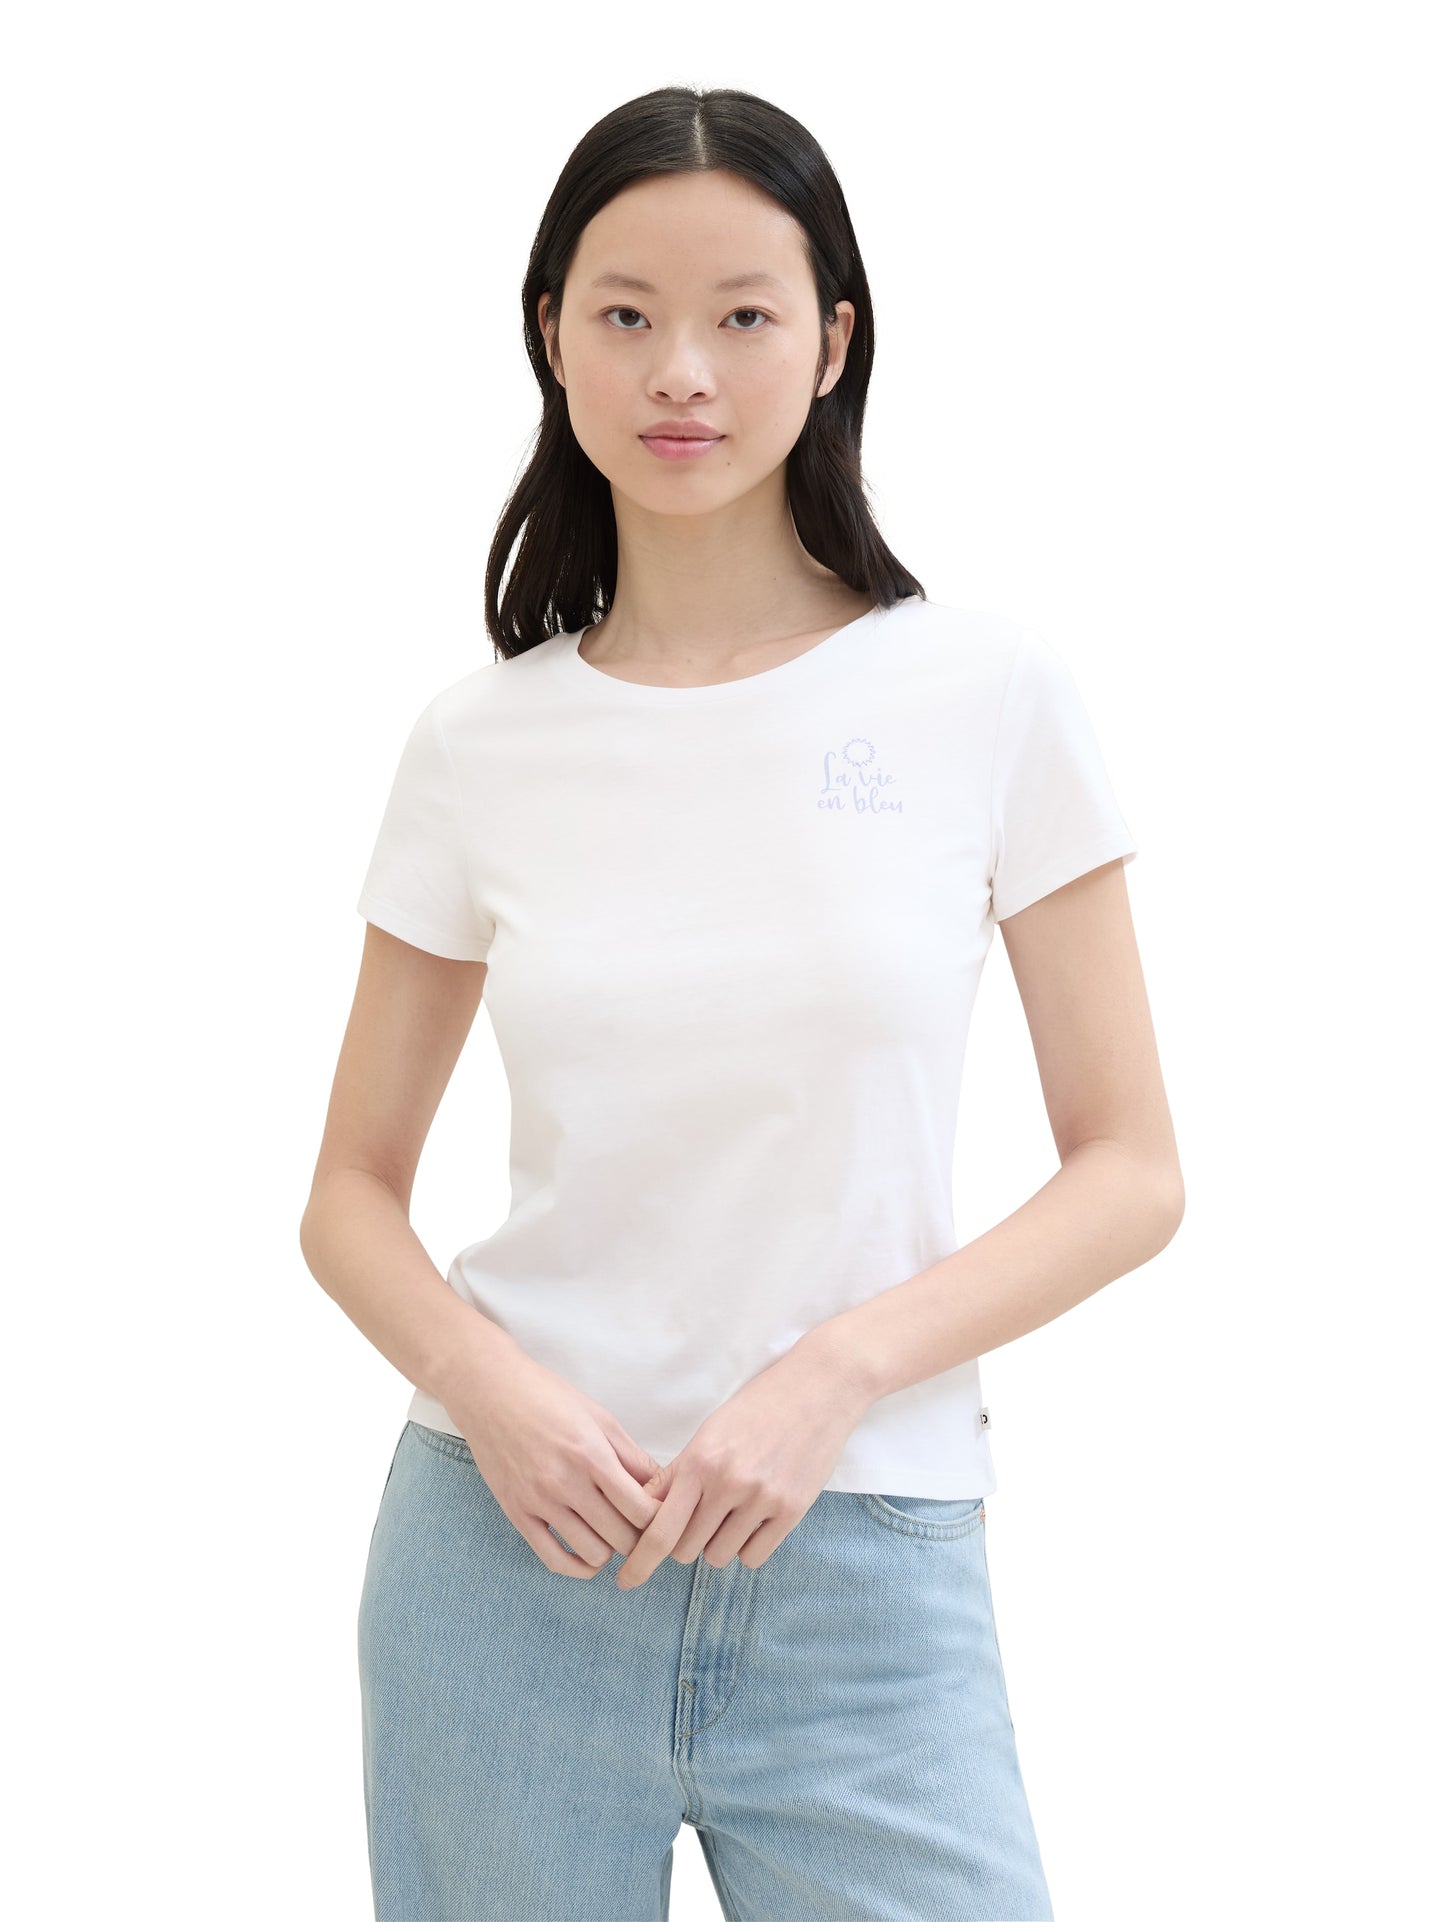 Print T-Shirt mit Bio-Baumwolle